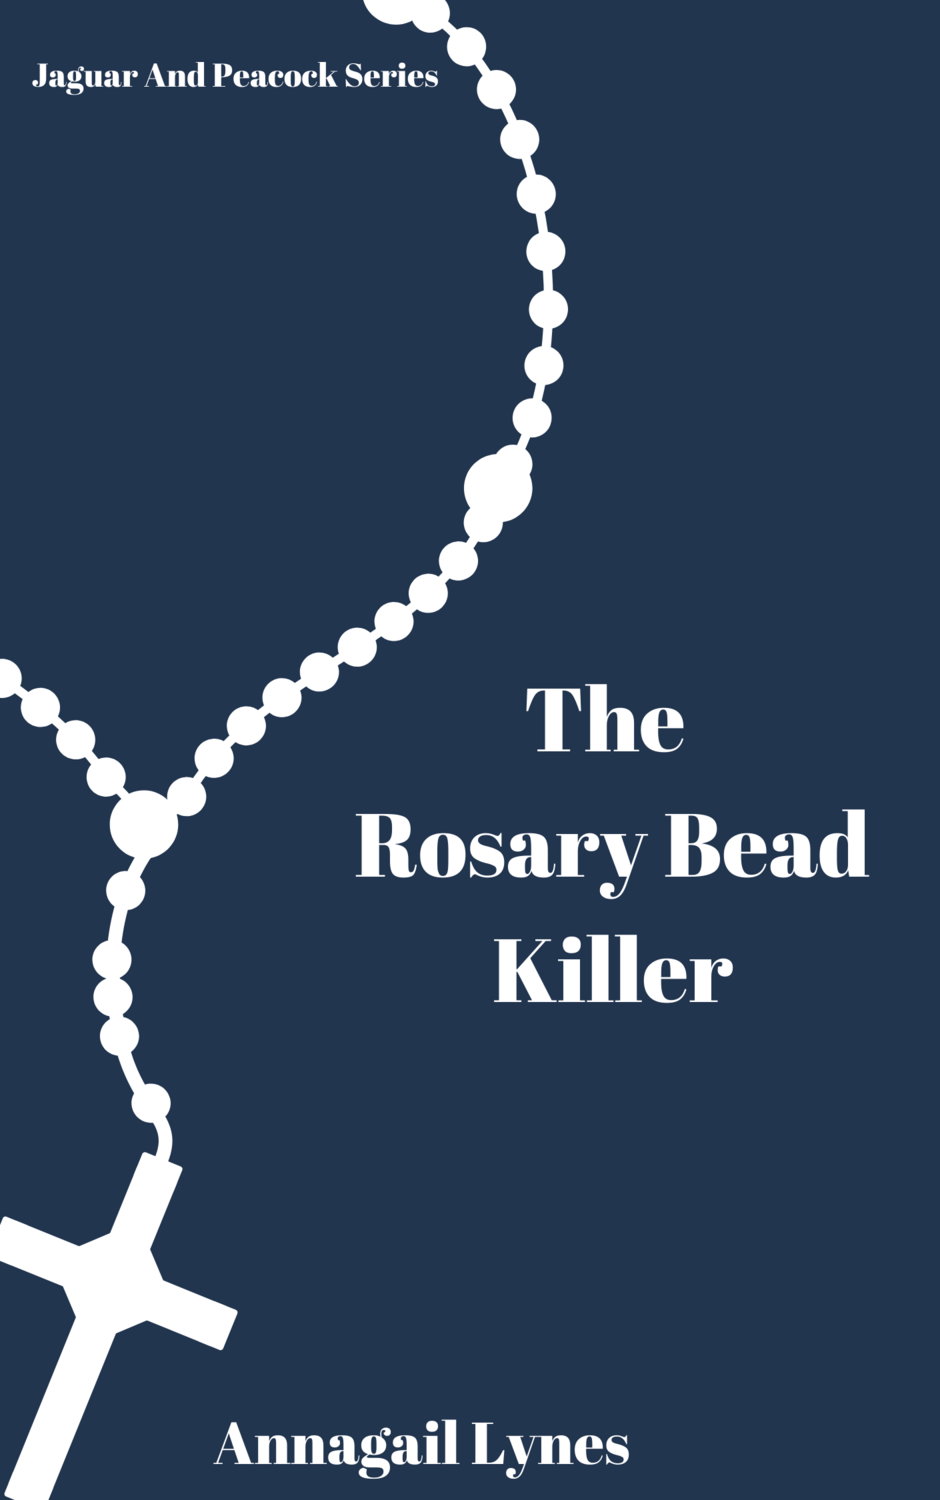 The Rosary Bead Killer E-Novel (Novel 6 In The Jaguar & Peacock Series)